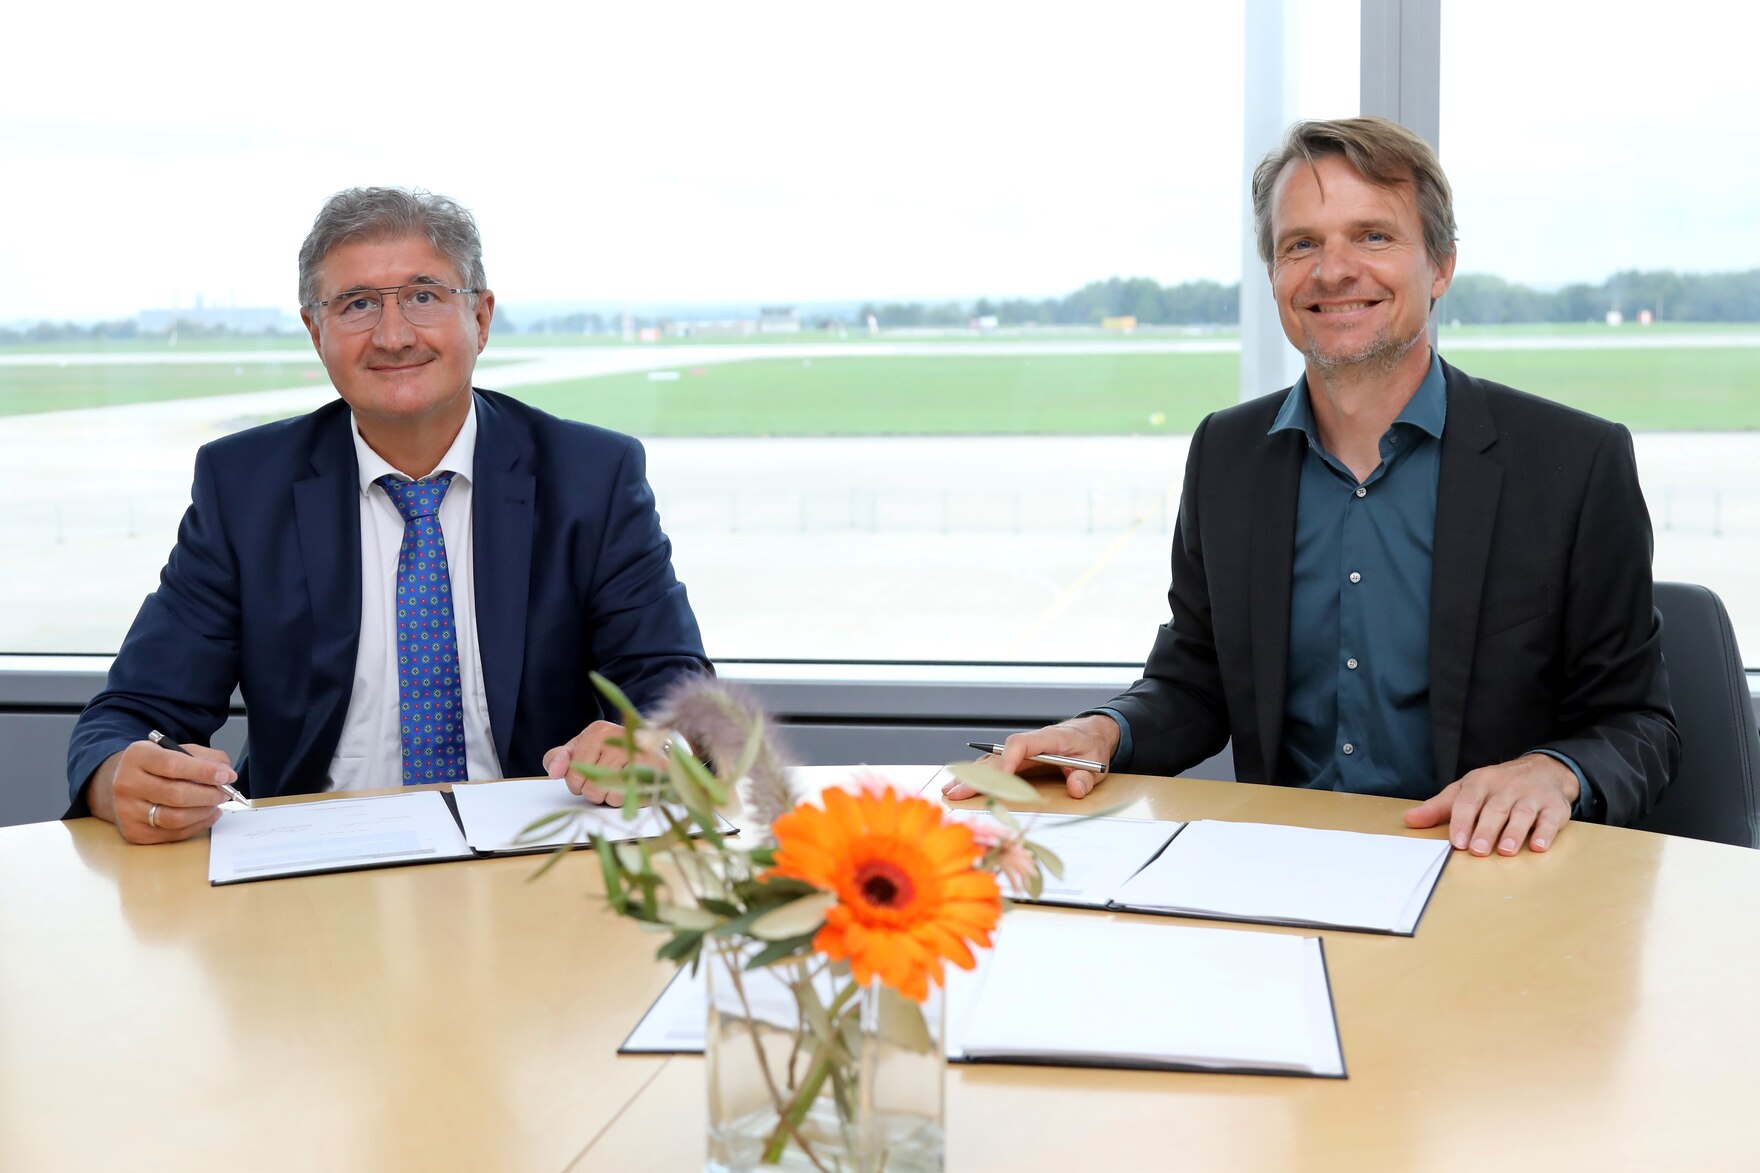  Staatssekretär Prof. Thomas Popp und der Vertreter des Entwicklungsdienstleisters Seitenbau GmbH zeigen die unterschriebenen Verträge in die Kamera. .